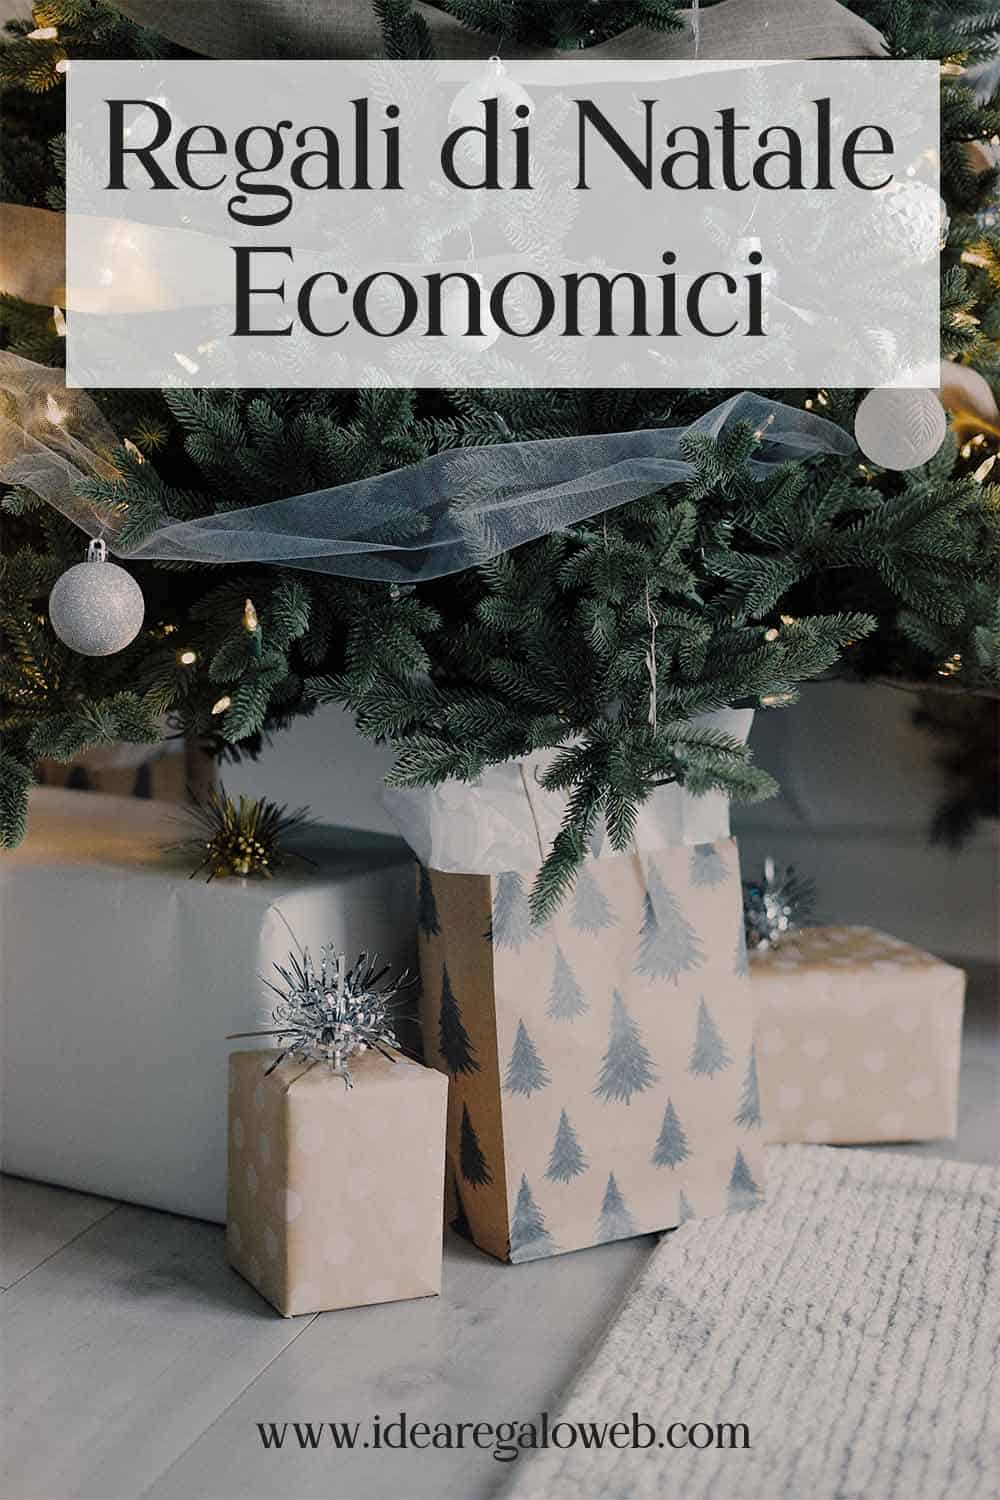 Regali di Natale Economici - copertina - 1000x1500 idearegaloweb